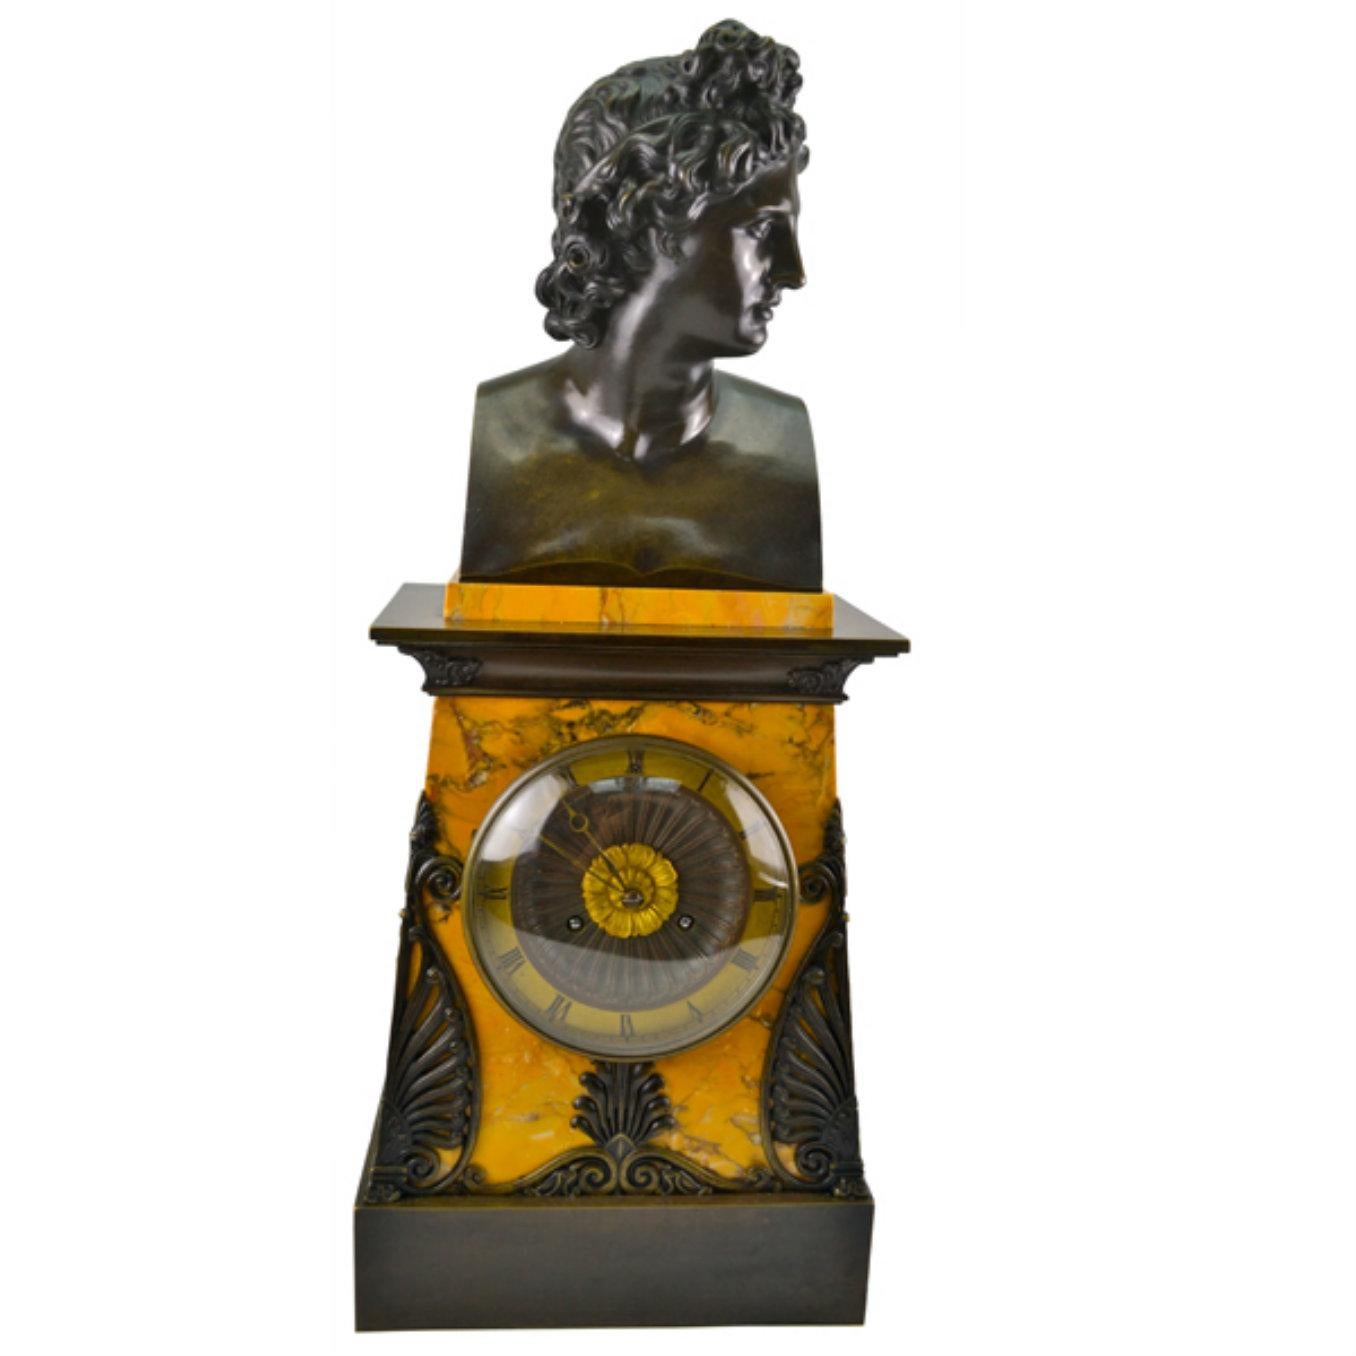 Ein schönes Beispiel für eine französische Empire-Uhr, um 1830. Das rechteckige, abgestufte Gehäuse besteht aus gelbem Siena-Marmor und ist oben und unten mit patinierter Bronze verziert. Auf dem Uhrengehäuse sitzt ein sehr gut ziselierter,